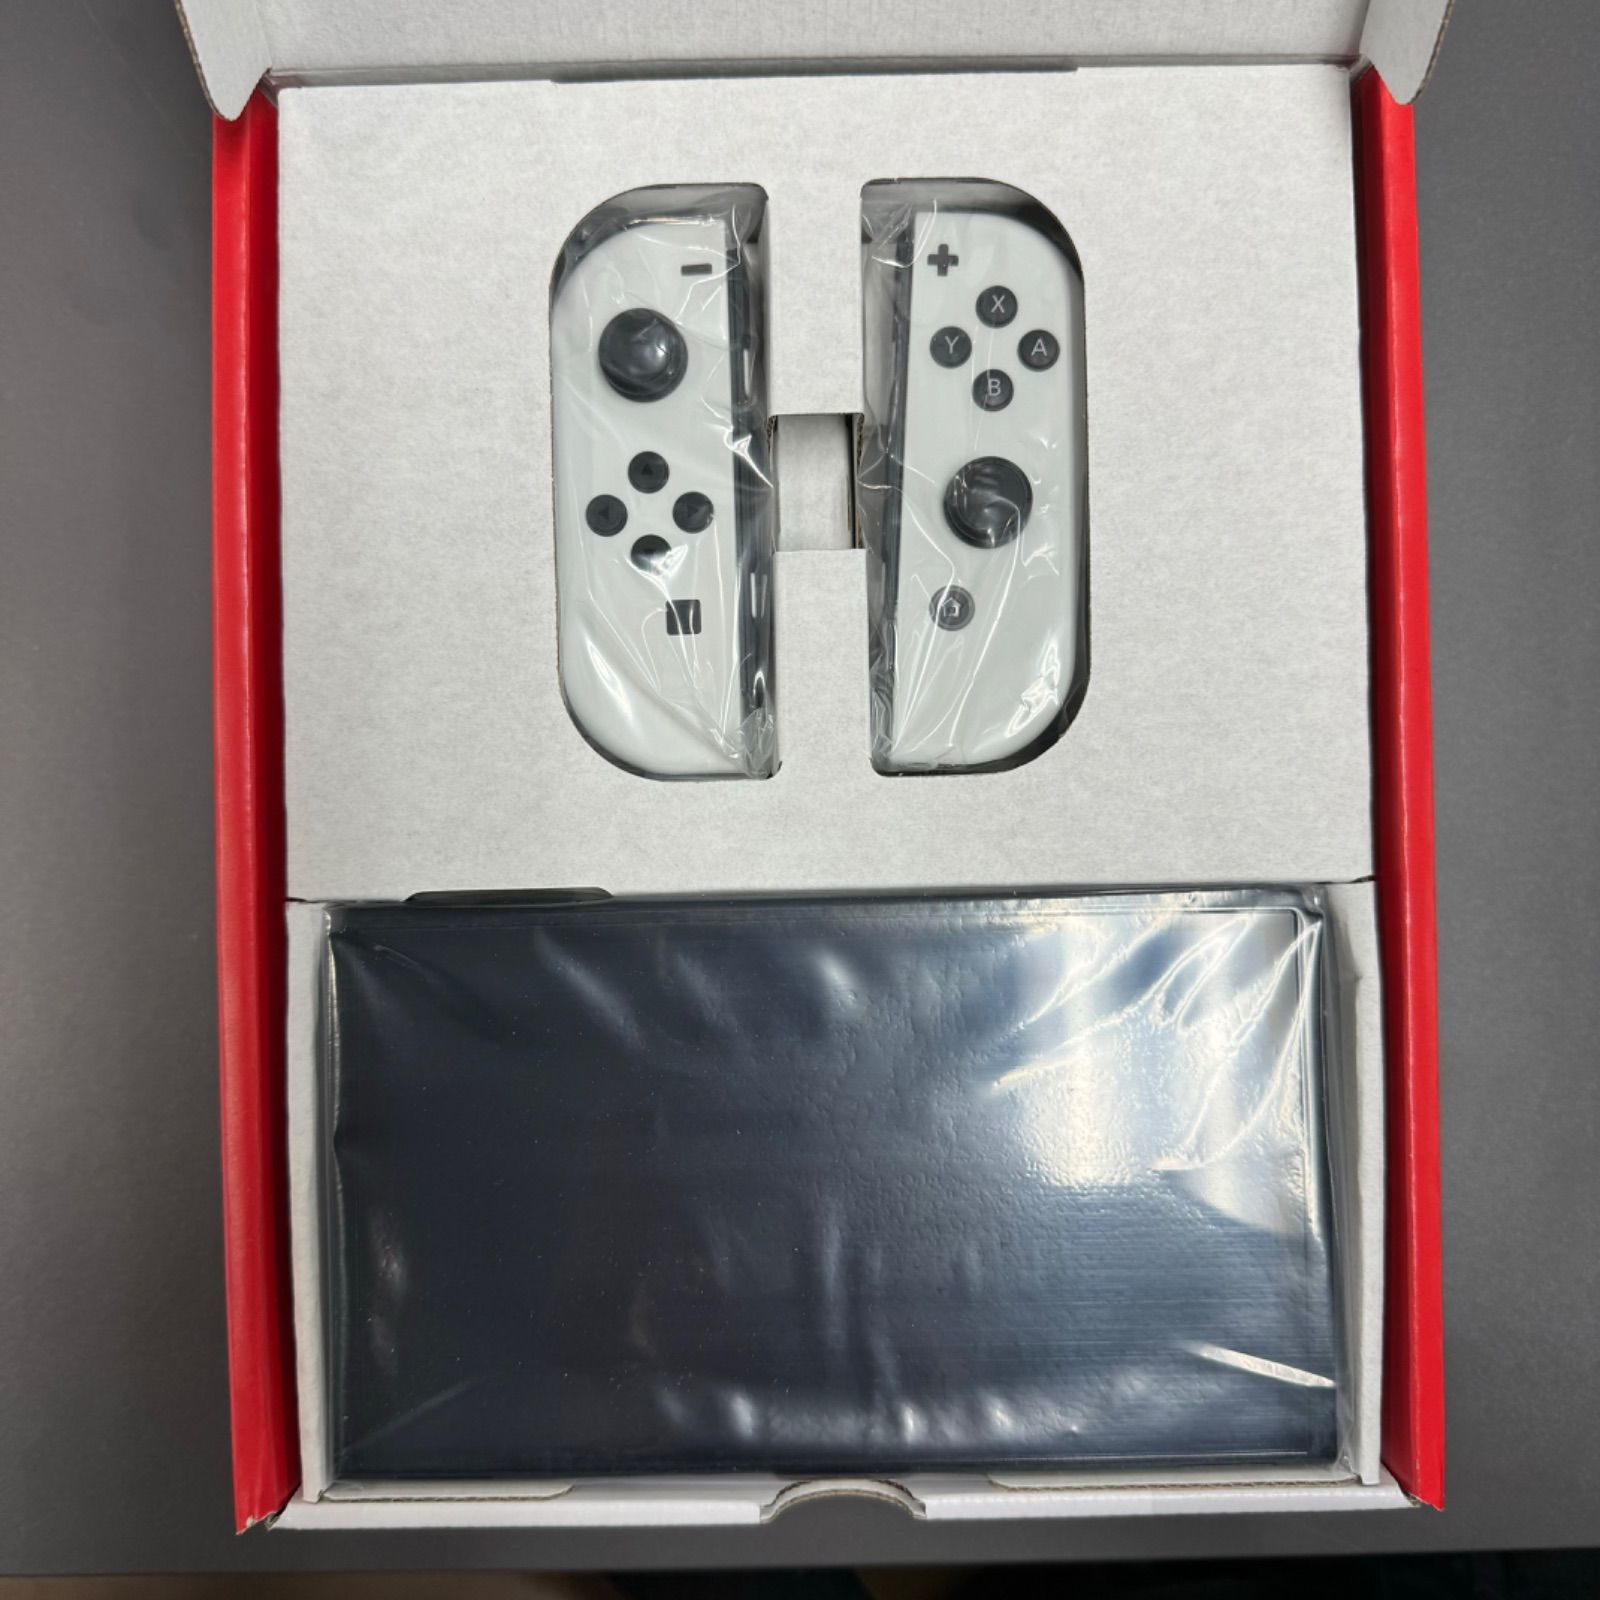 Nintendo Switch 有機ELモデル ホワイト 新品未使用 訳ありエンタメホビー